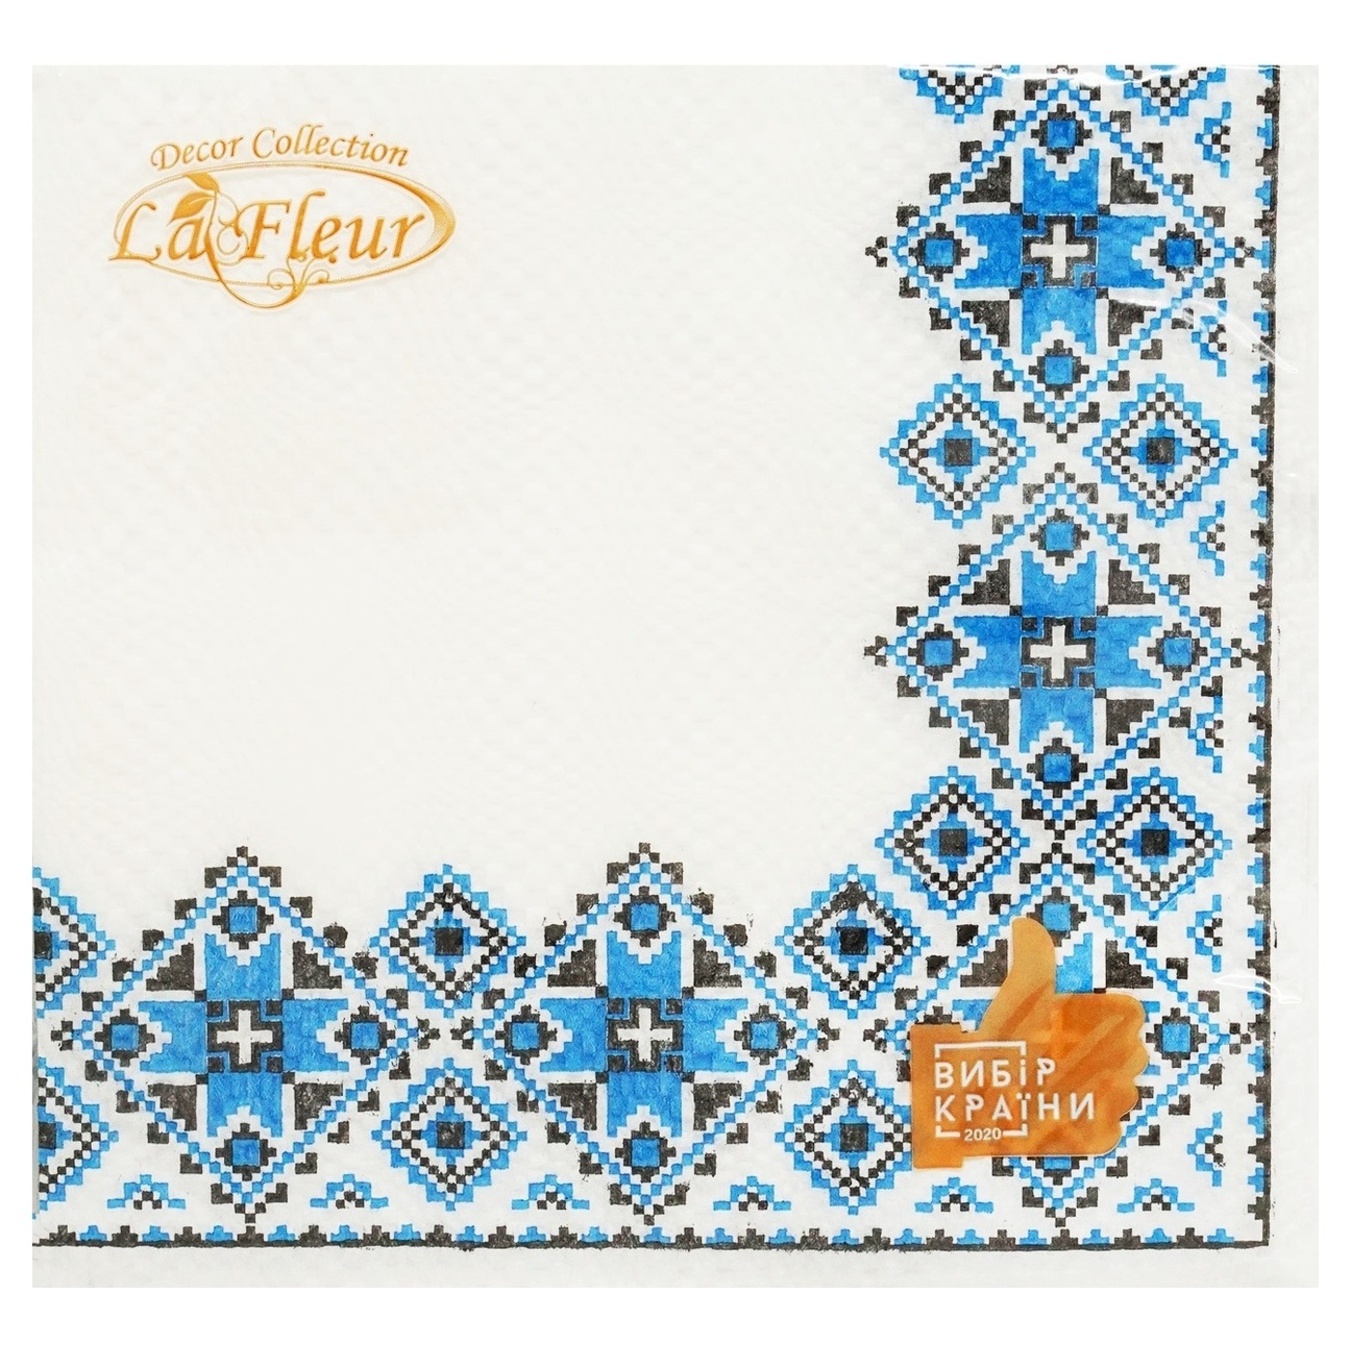 La Fleur decorative napkin Blue embroidery 2layers 33x33cm 16pcs